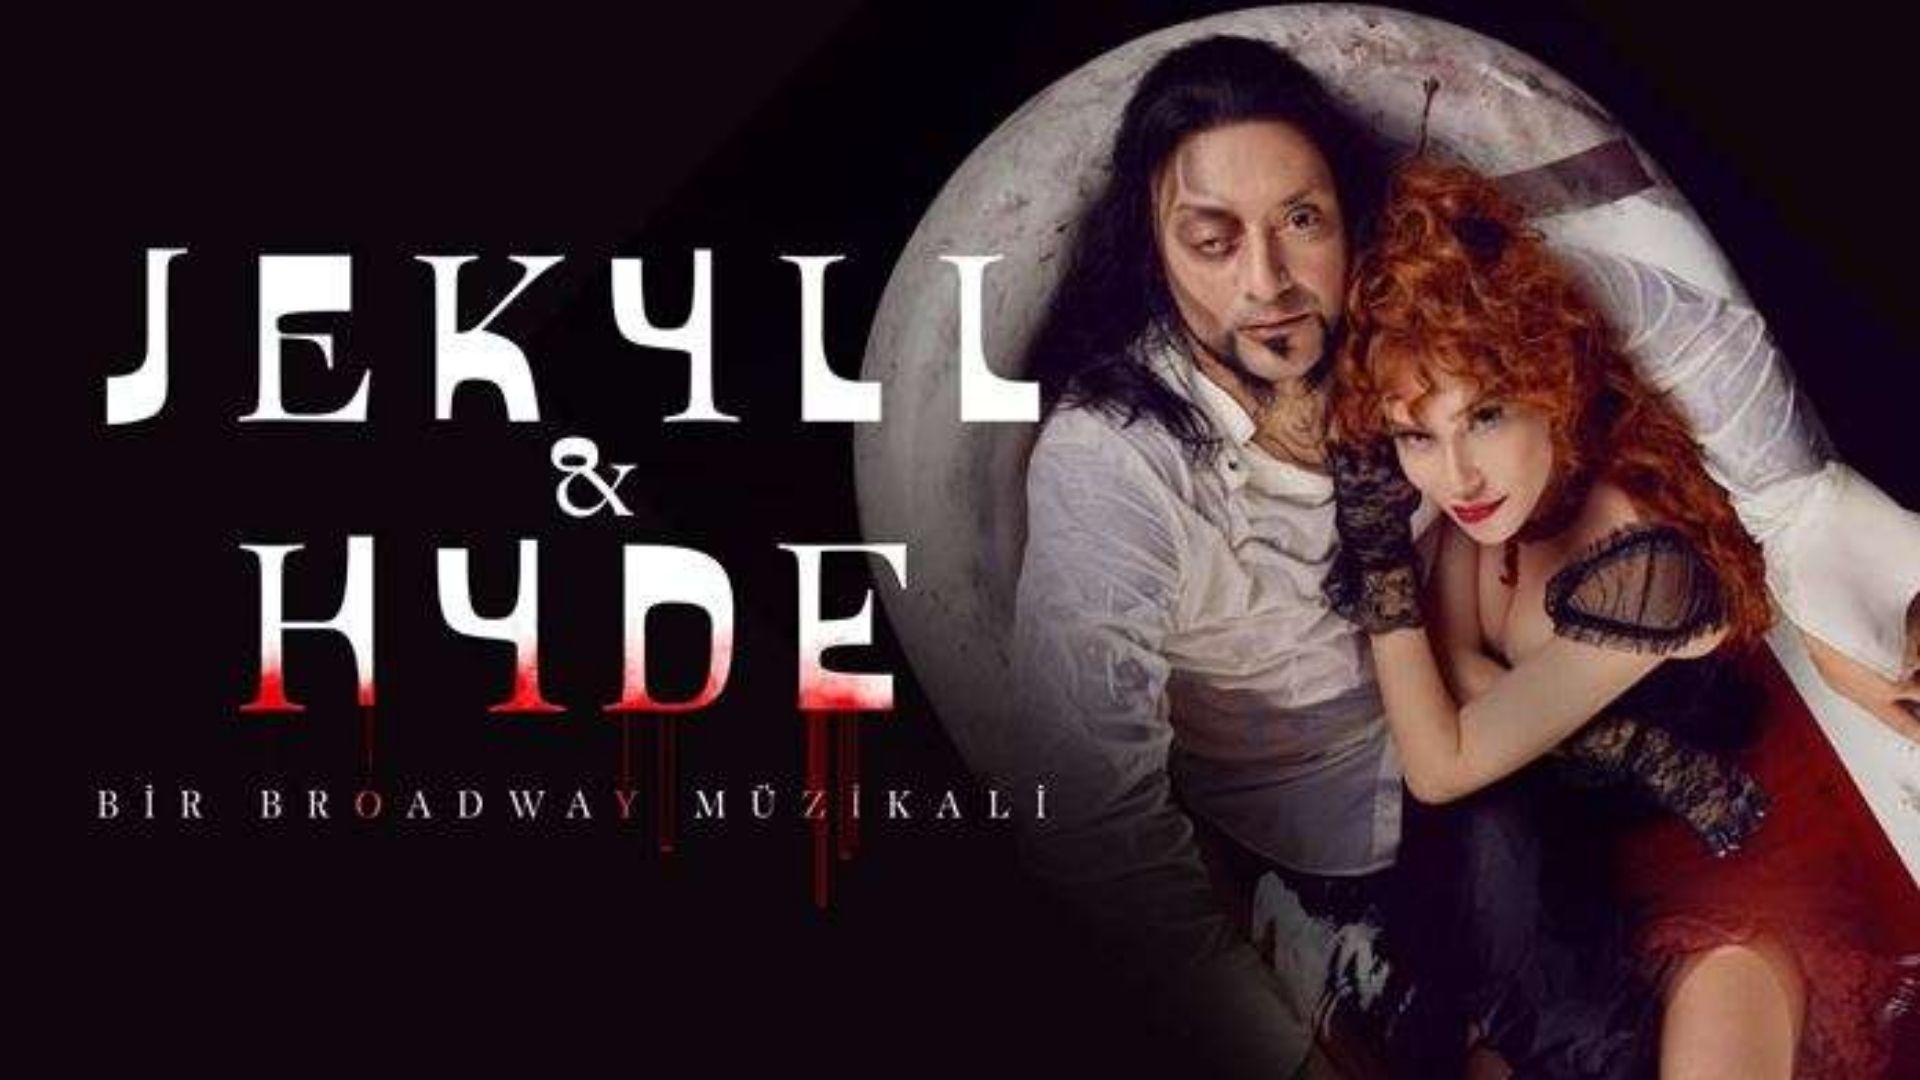 jekyll hyde istanbul'da konser ve tiyatro oyunlari